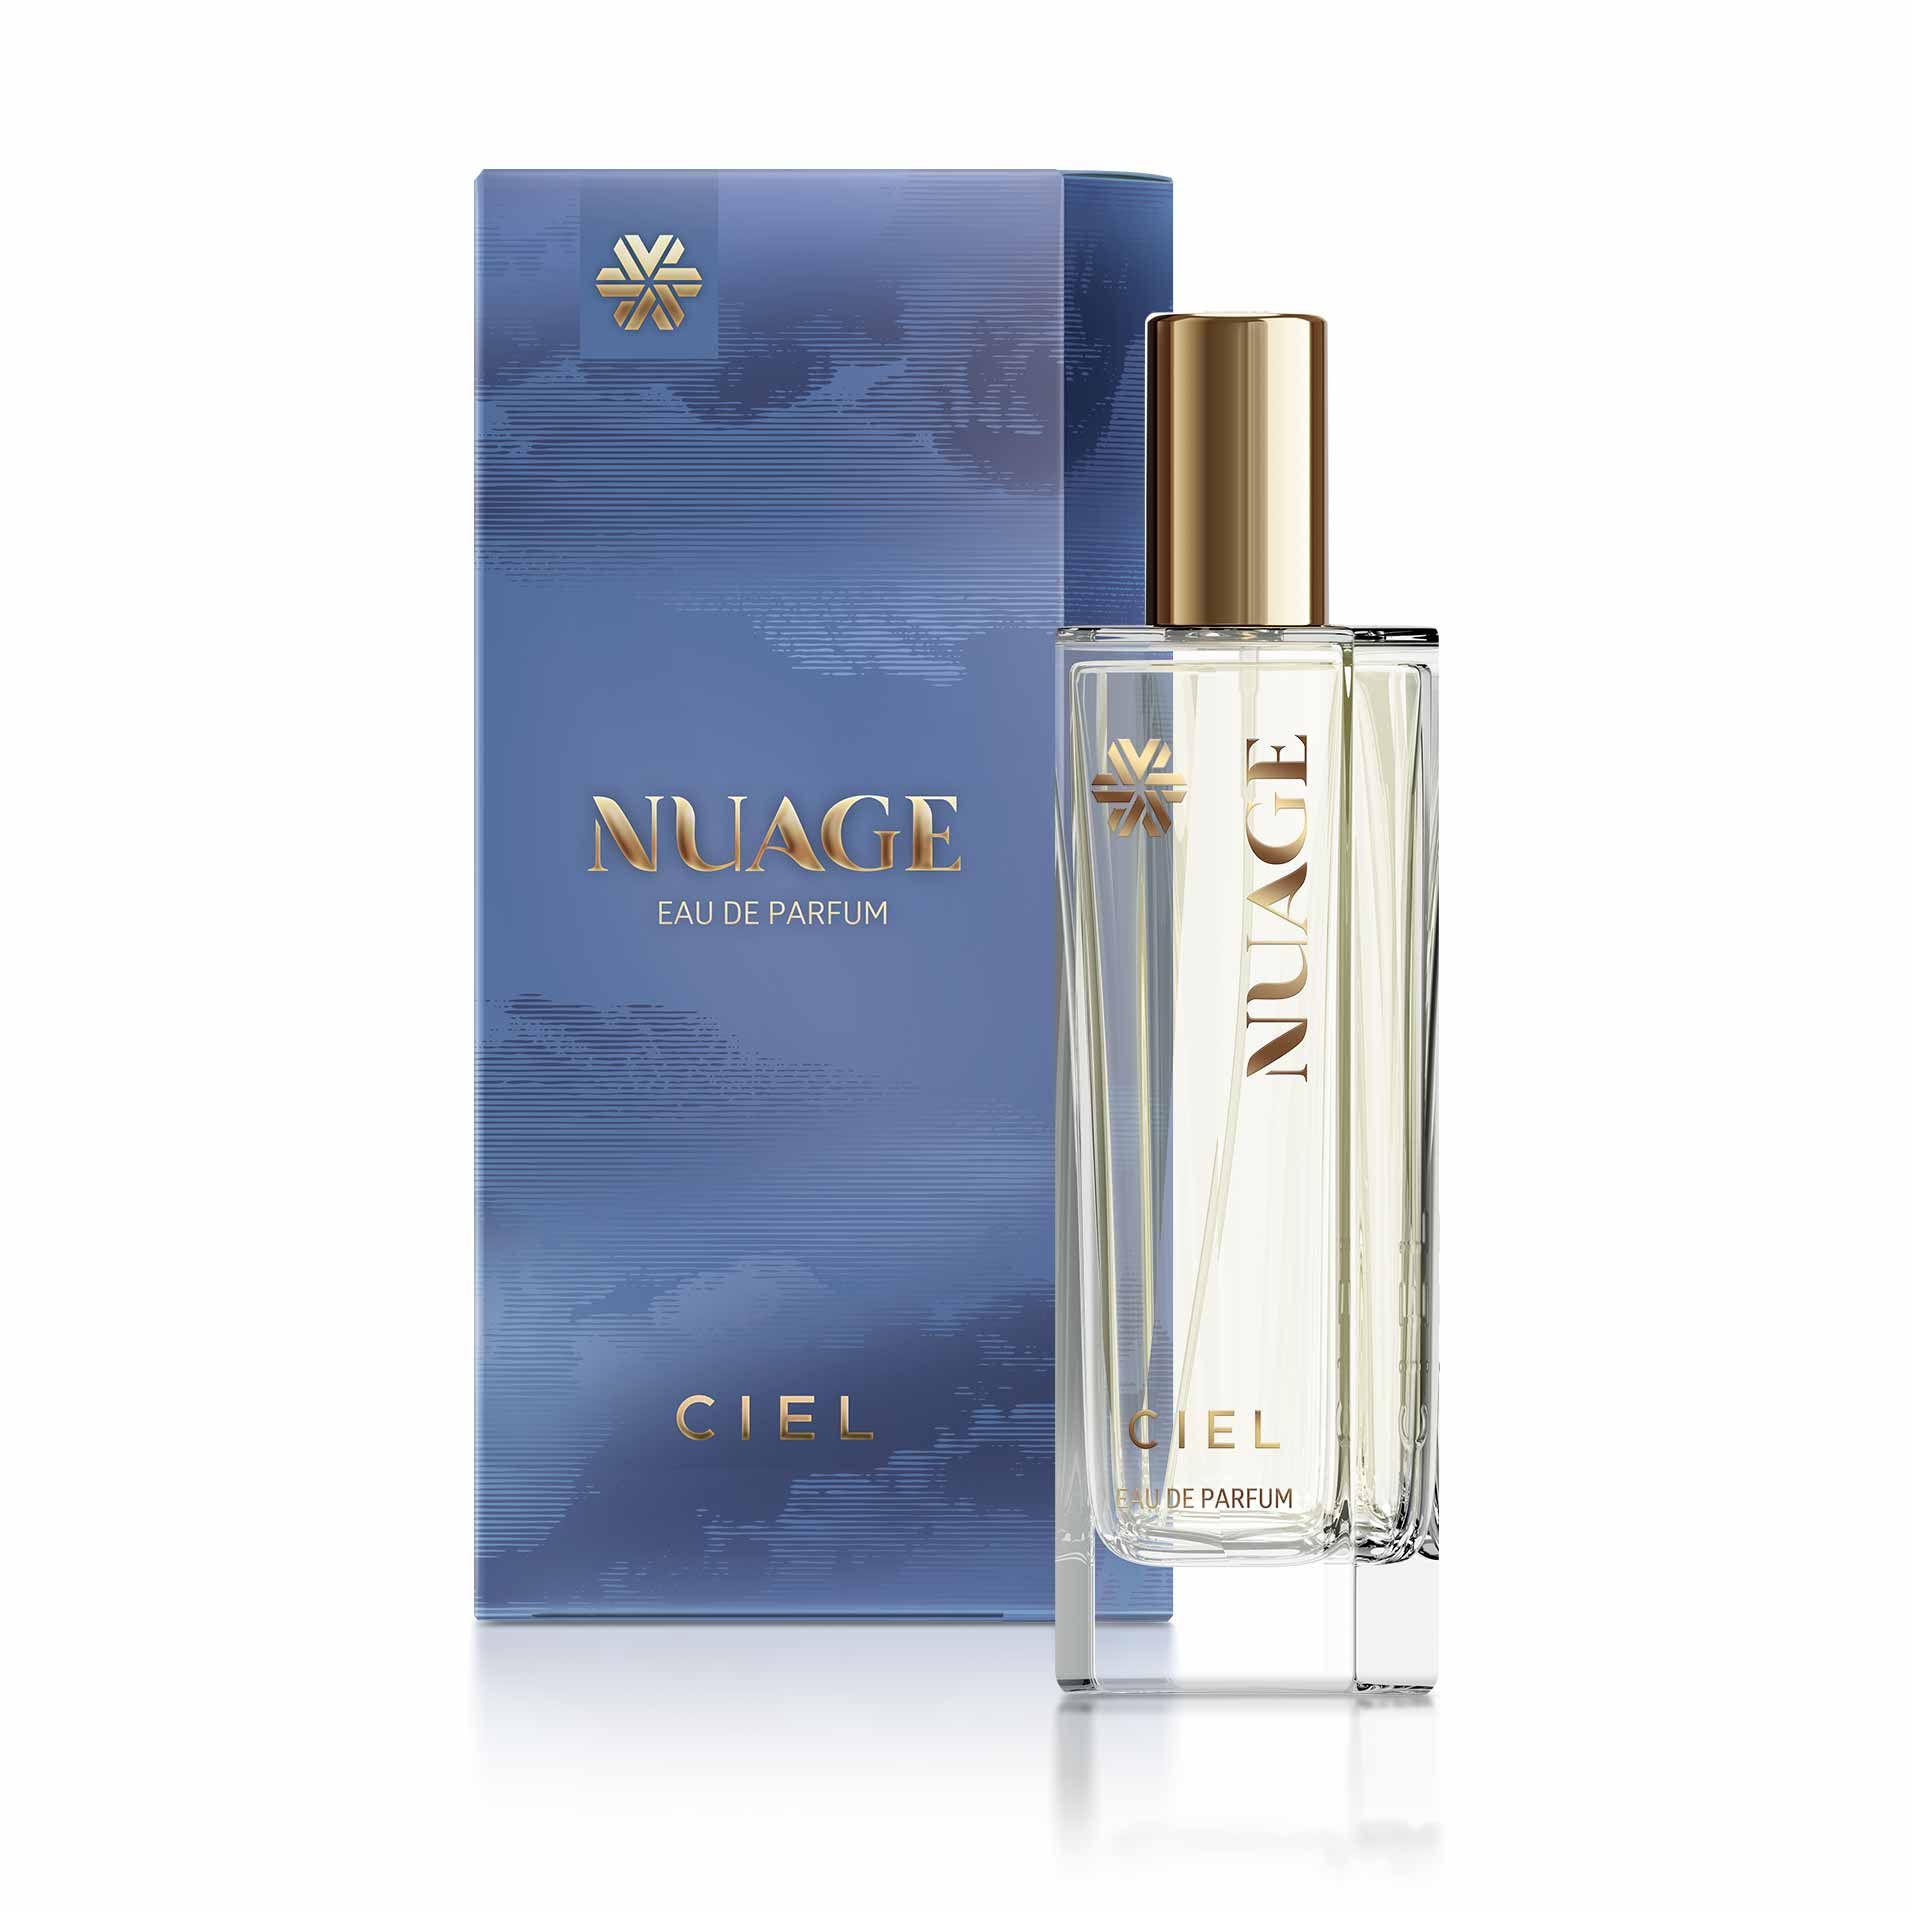 Коллекция ароматов Ciel - Nuage, парфюмерная вода